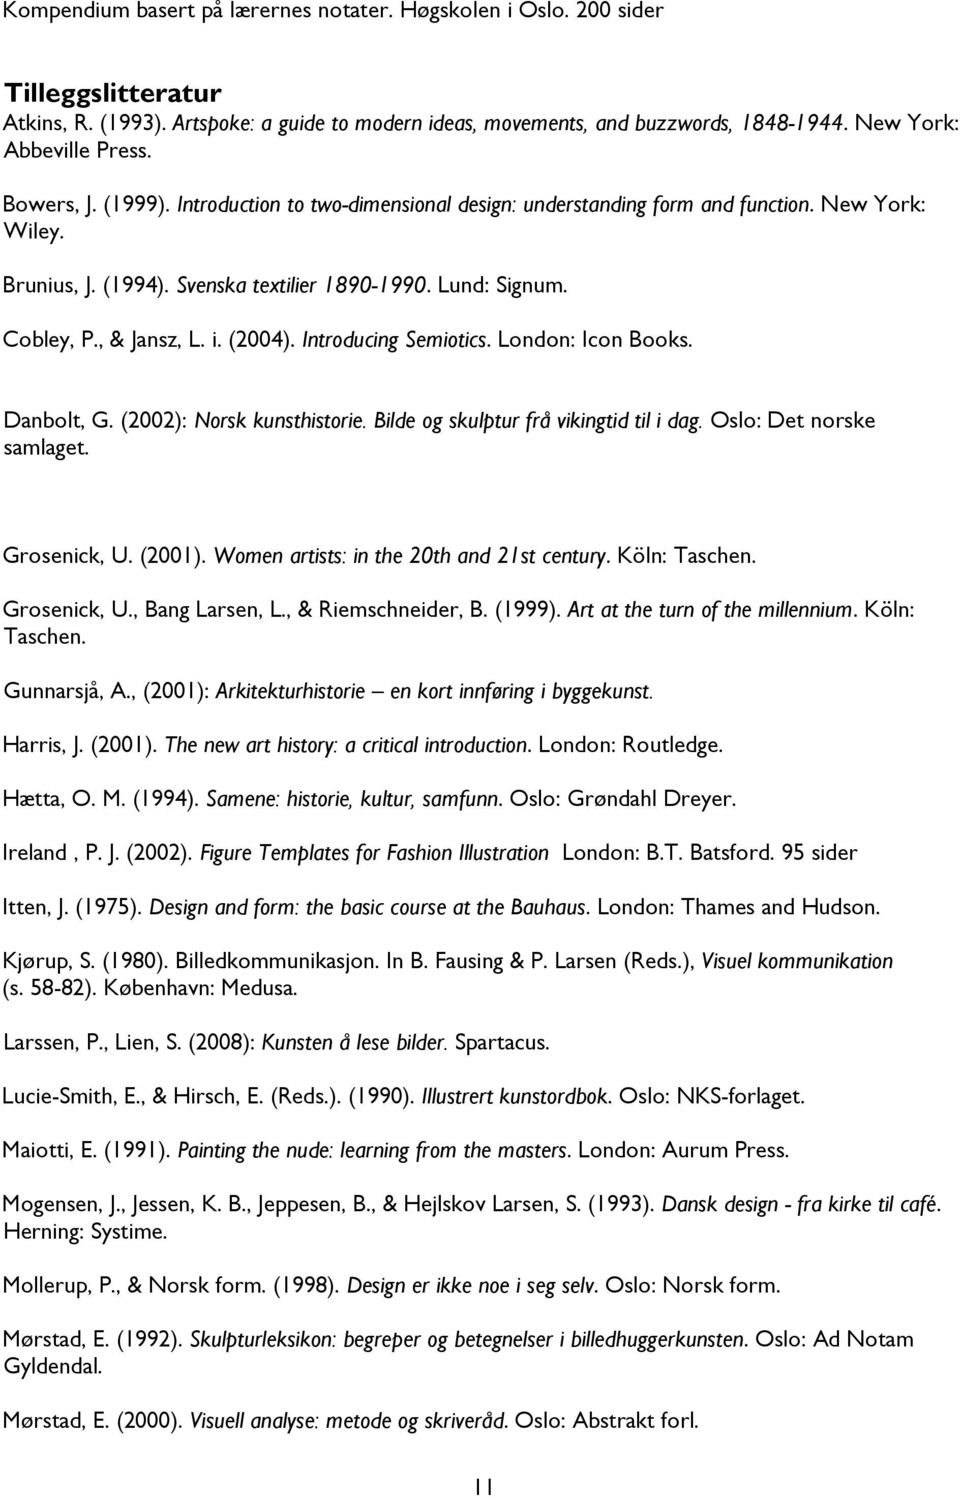 Cobley, P., & Jansz, L. i. (2004). Introducing Semiotics. London: Icon Books. Danbolt, G. (2002): Norsk kunsthistorie. Bilde og skulptur frå vikingtid til i dag. Oslo: Det norske samlaget.